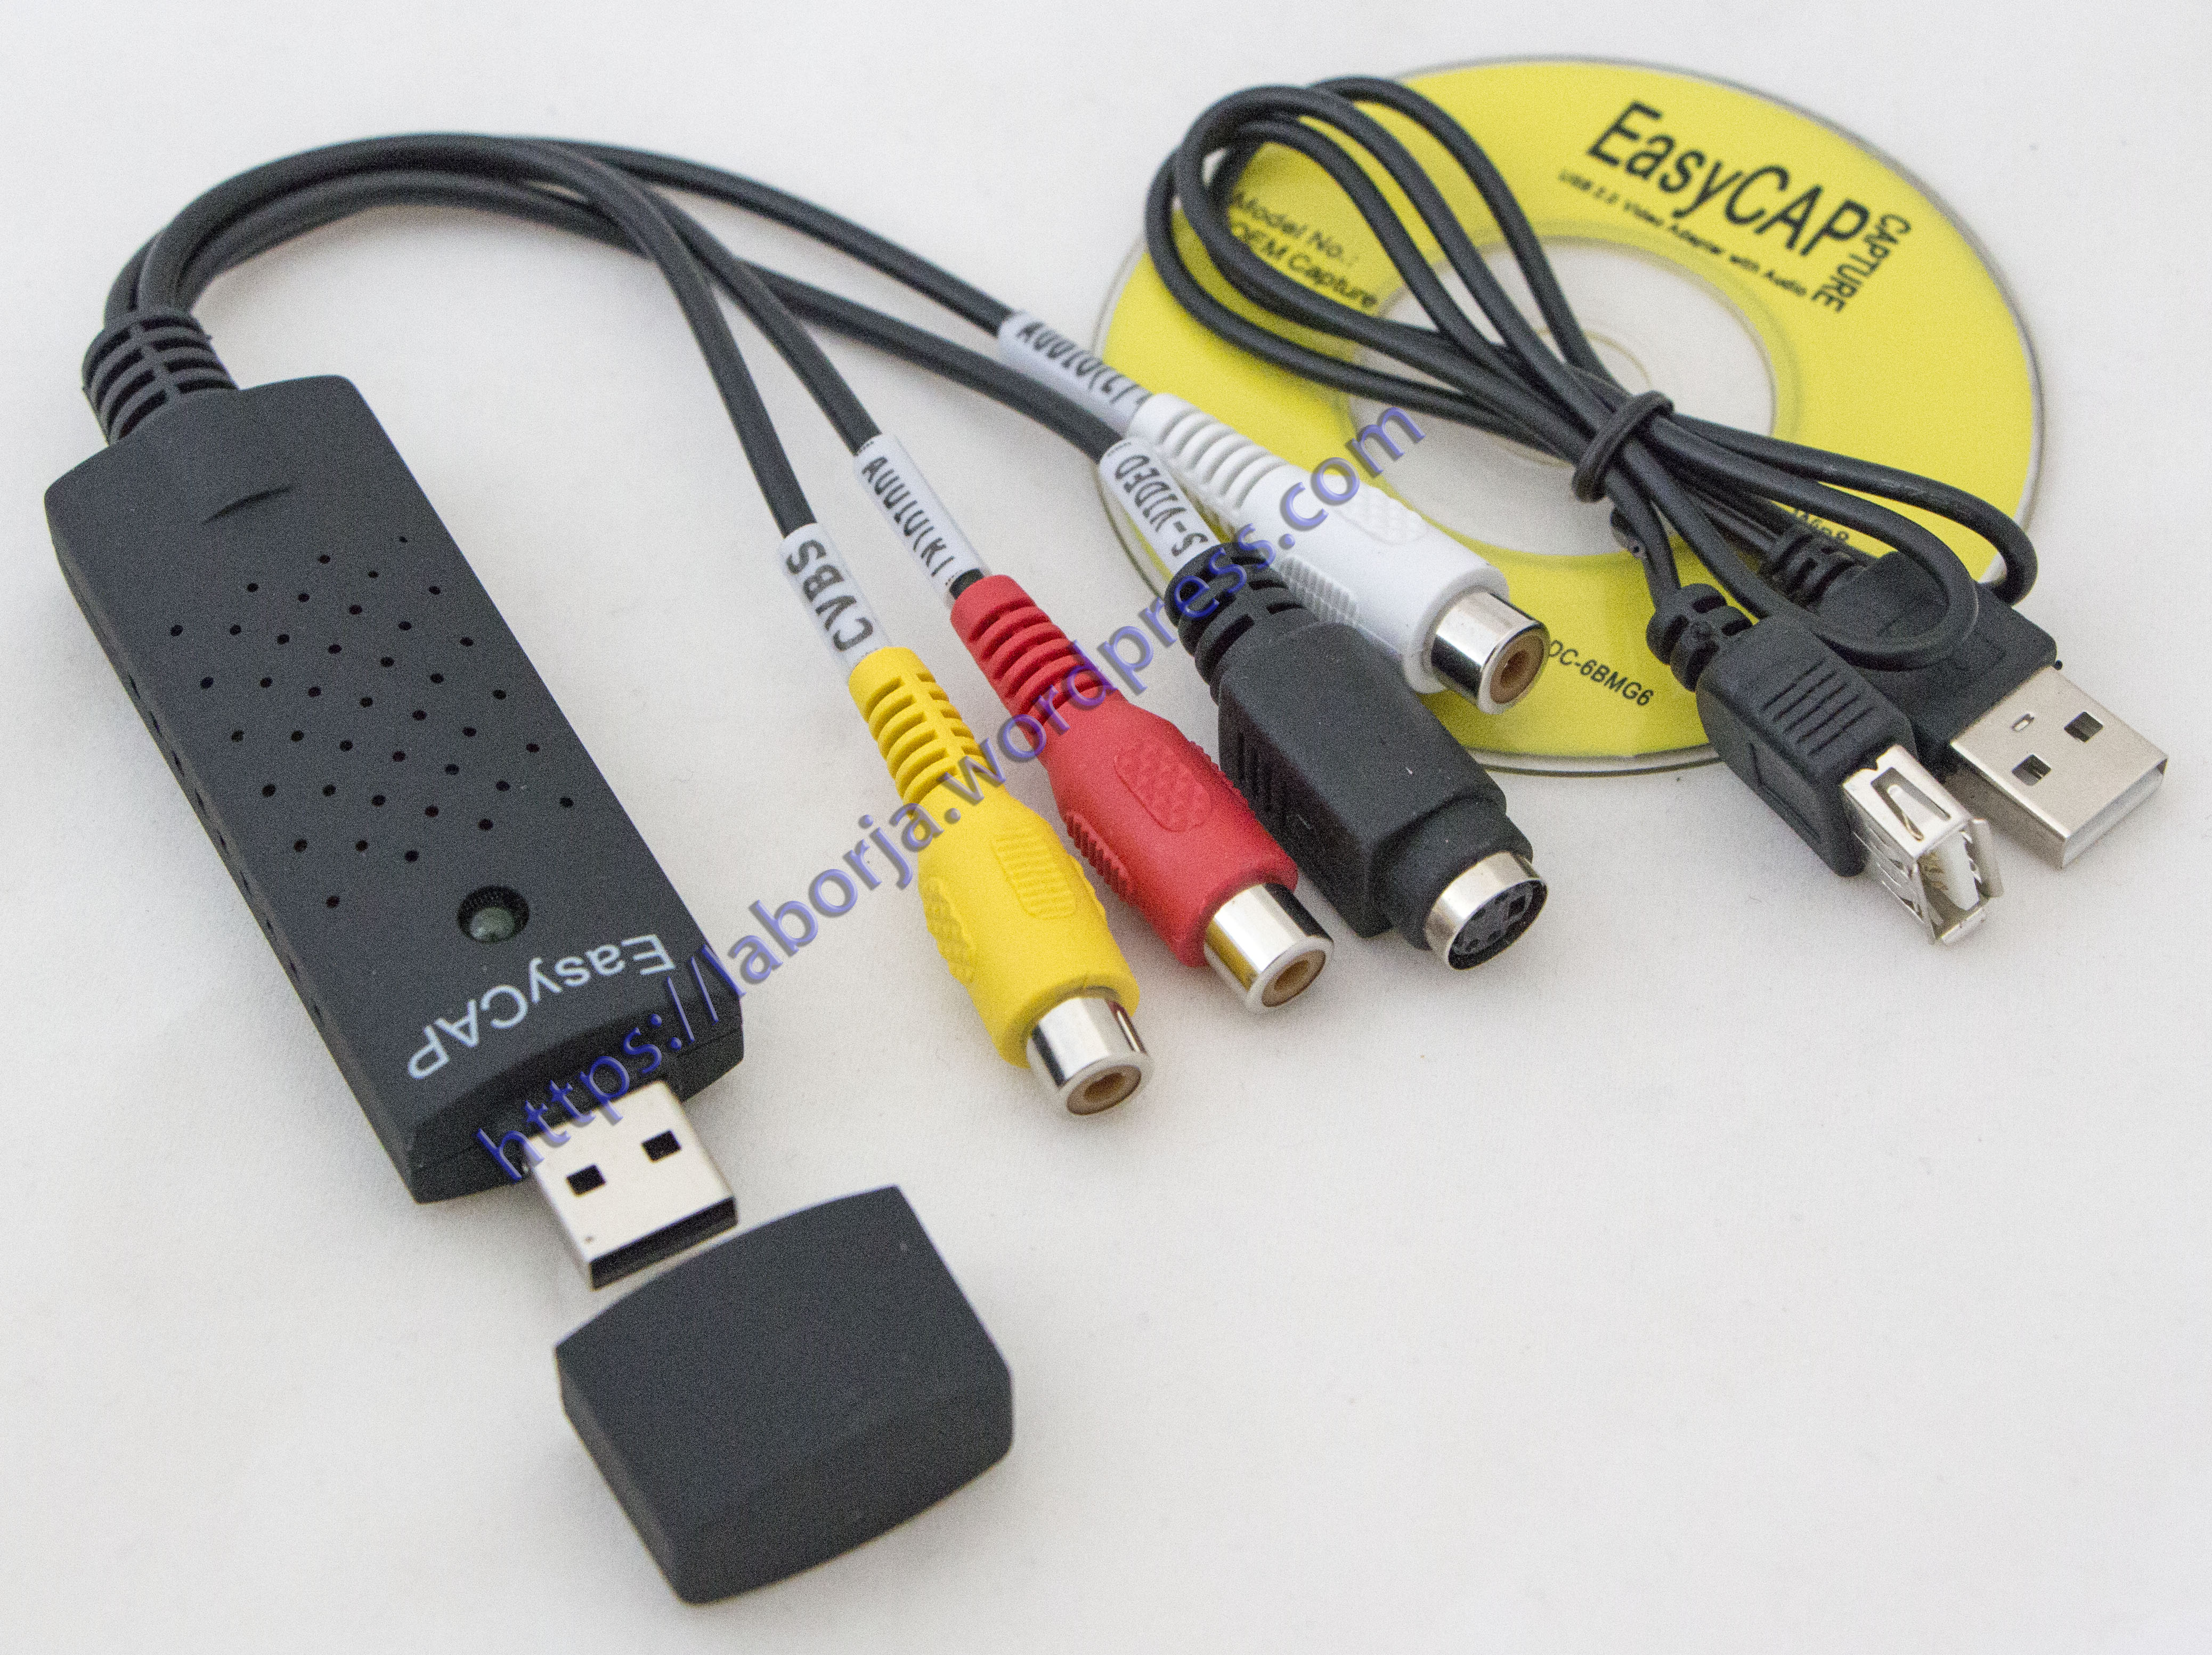 Easycap Audio Video Capture Card Adapter